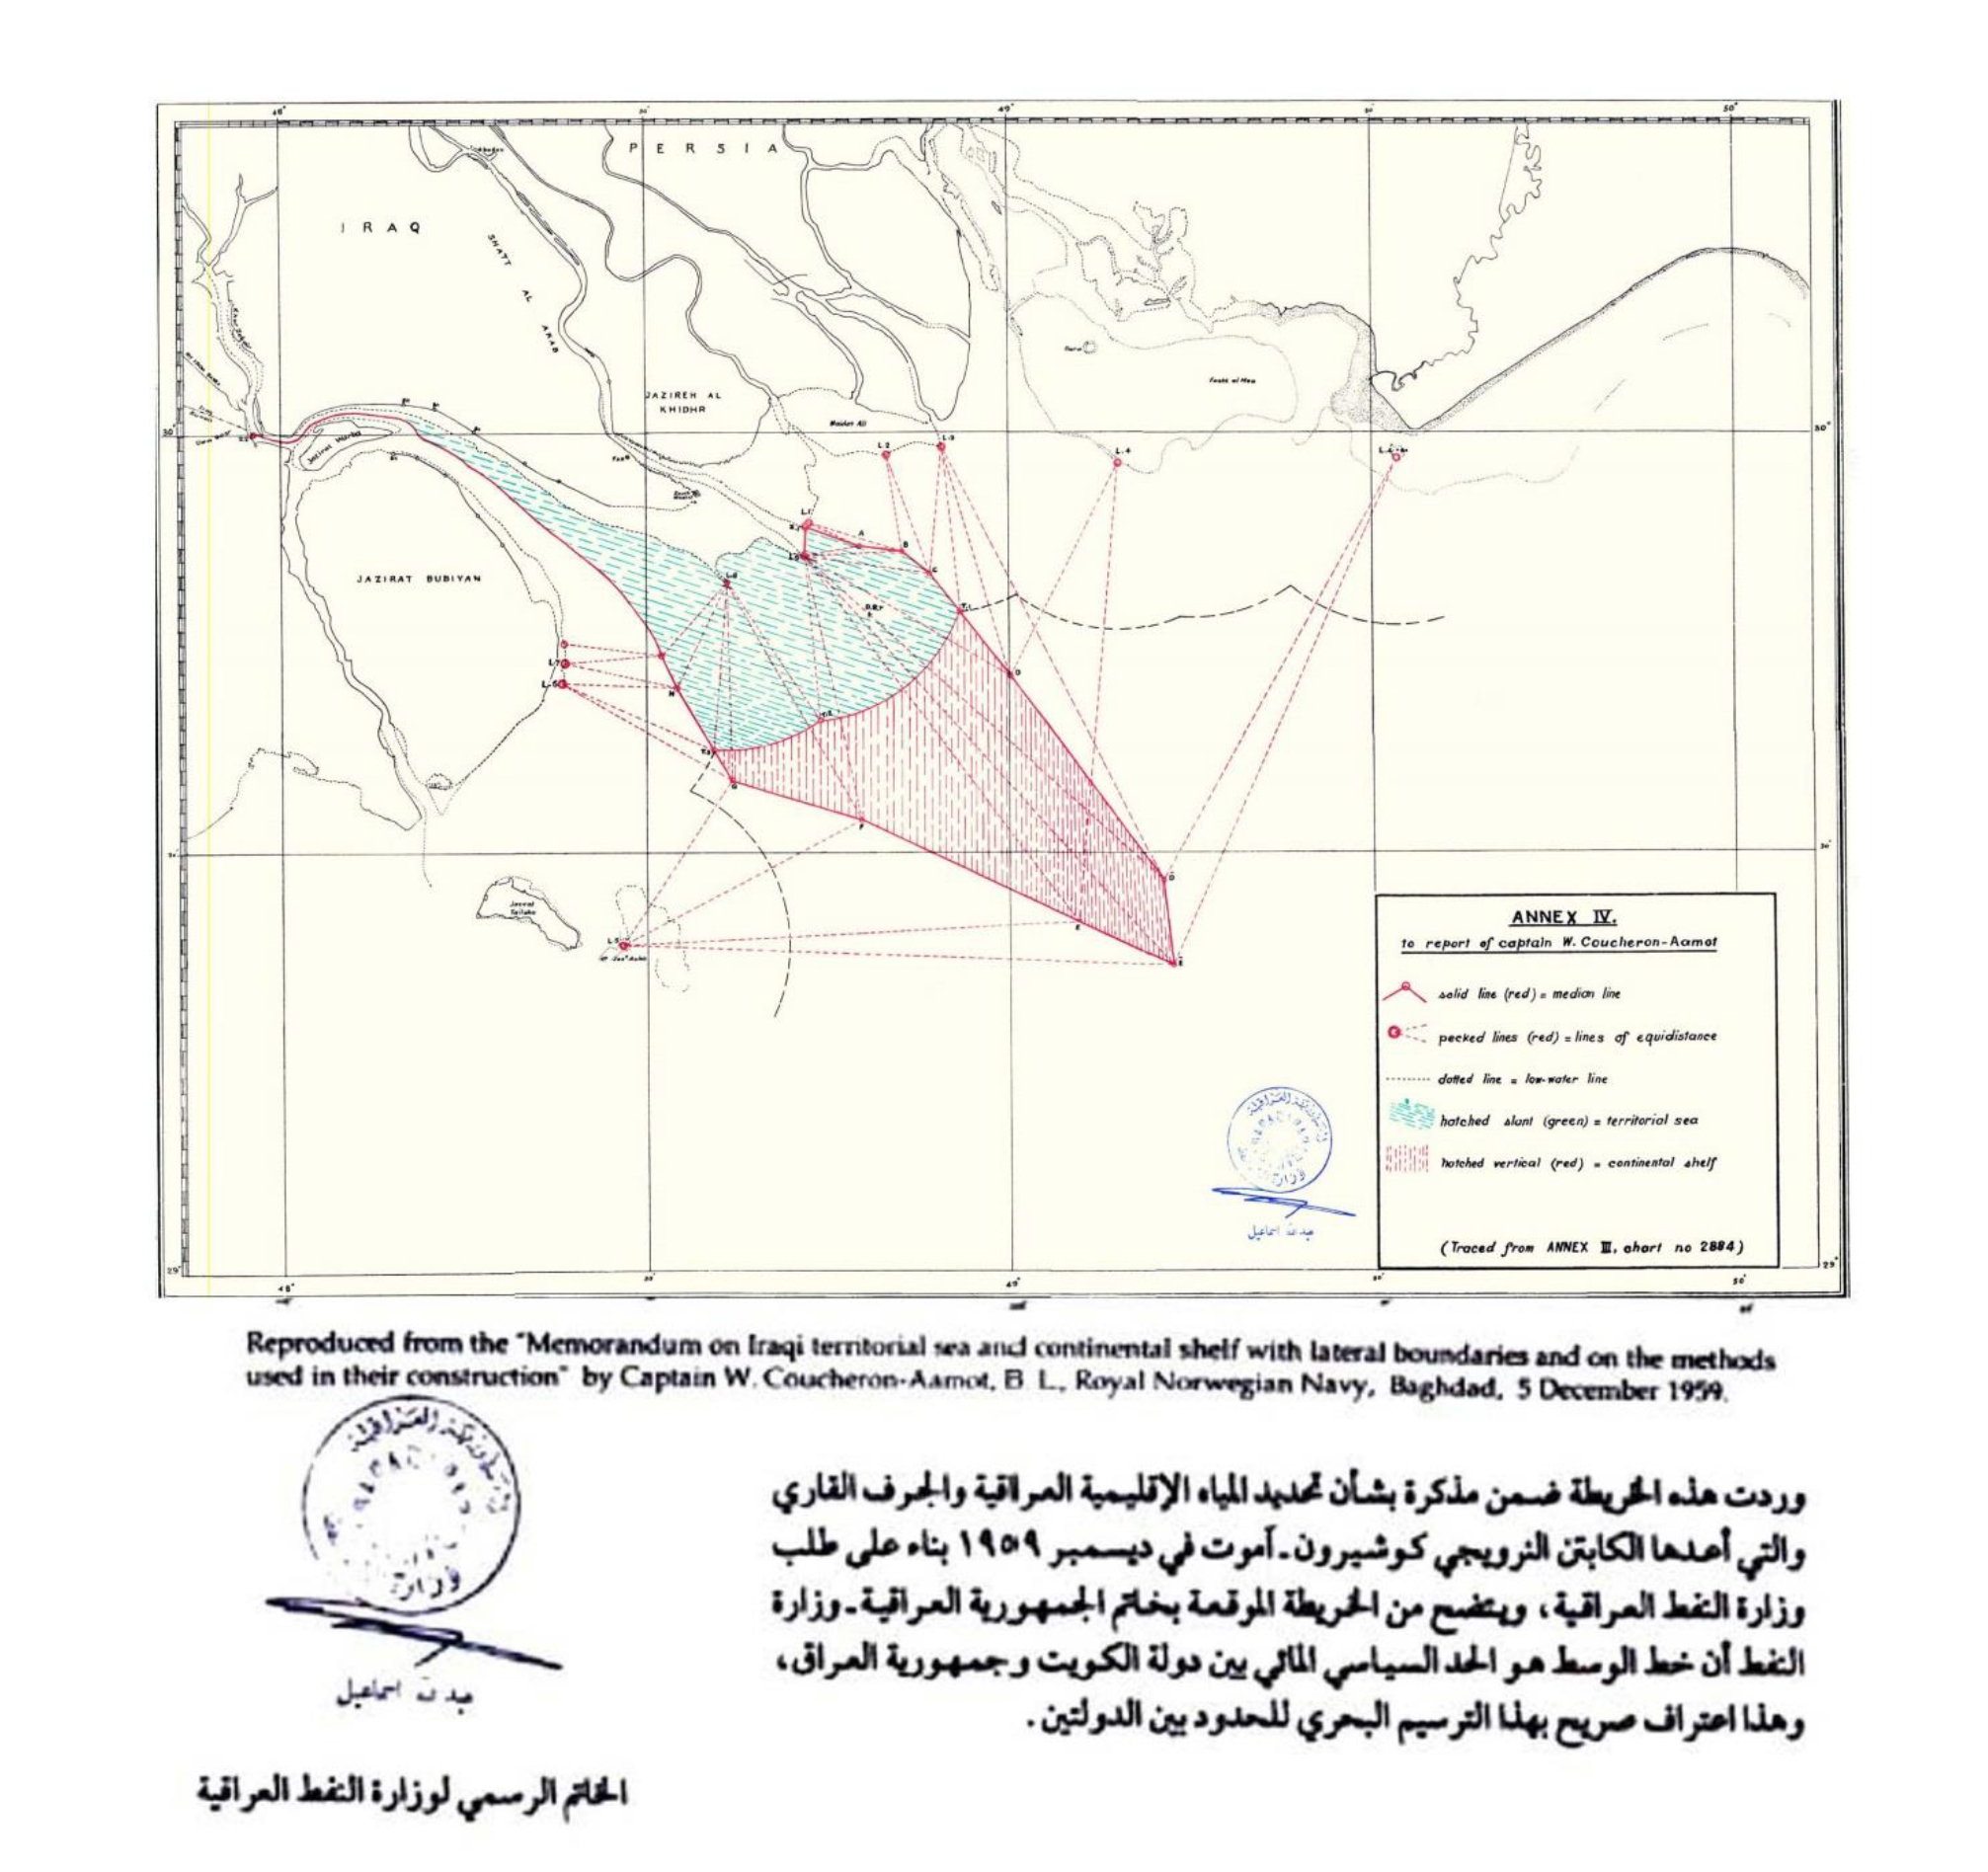 خريطة تظهر الحدود البحرية بحسب الاتفاقات الموقعة بين الكويت والعراق